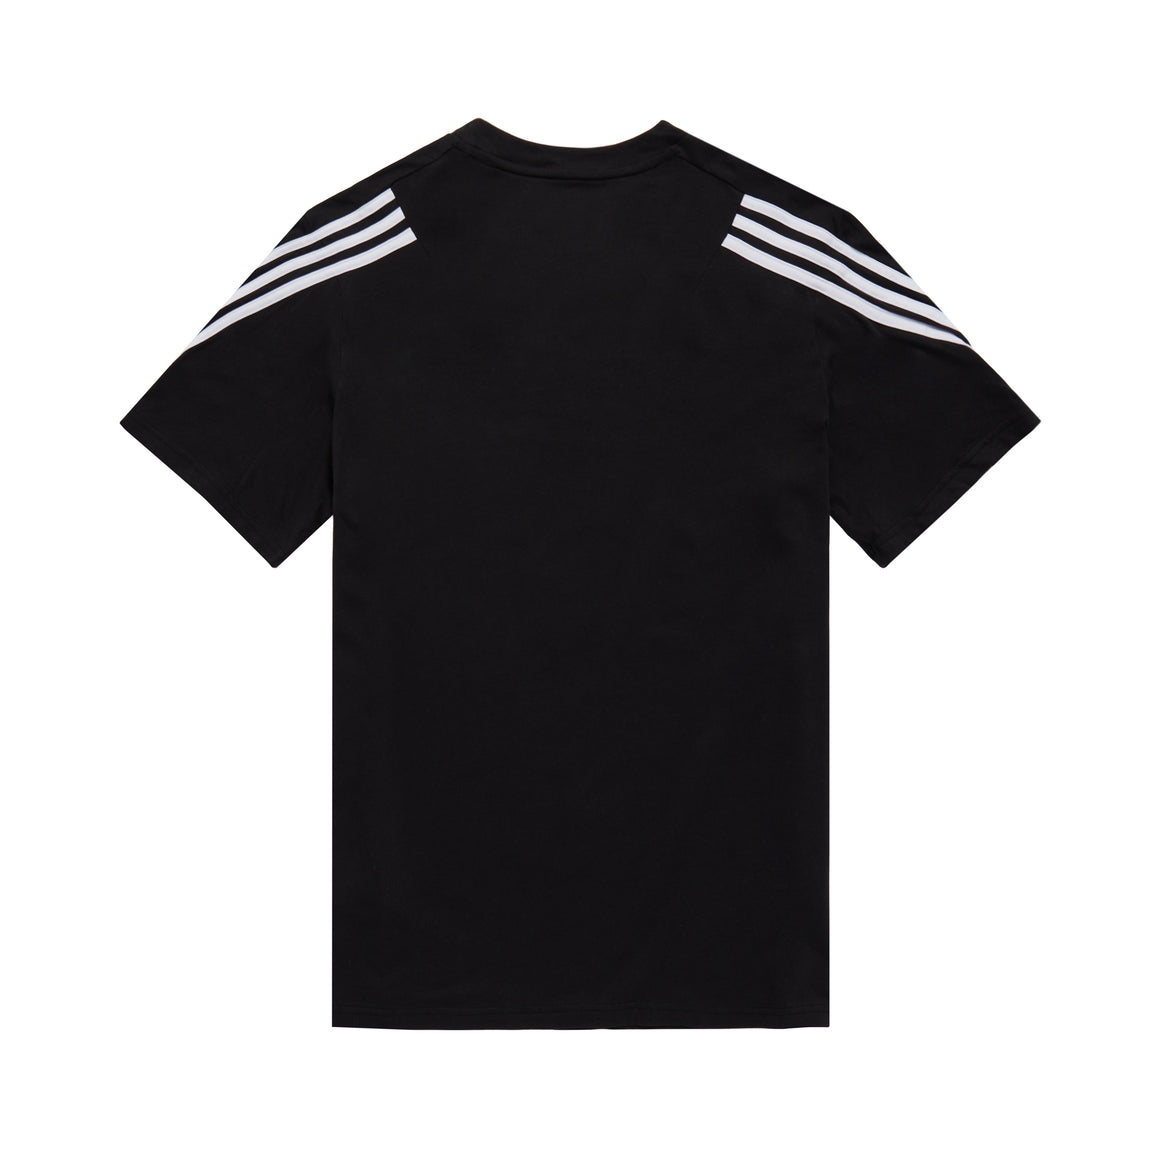 Adidas x 424 MLS Tee (Black) - Adidas x 424 MLS Tee (Black) - 